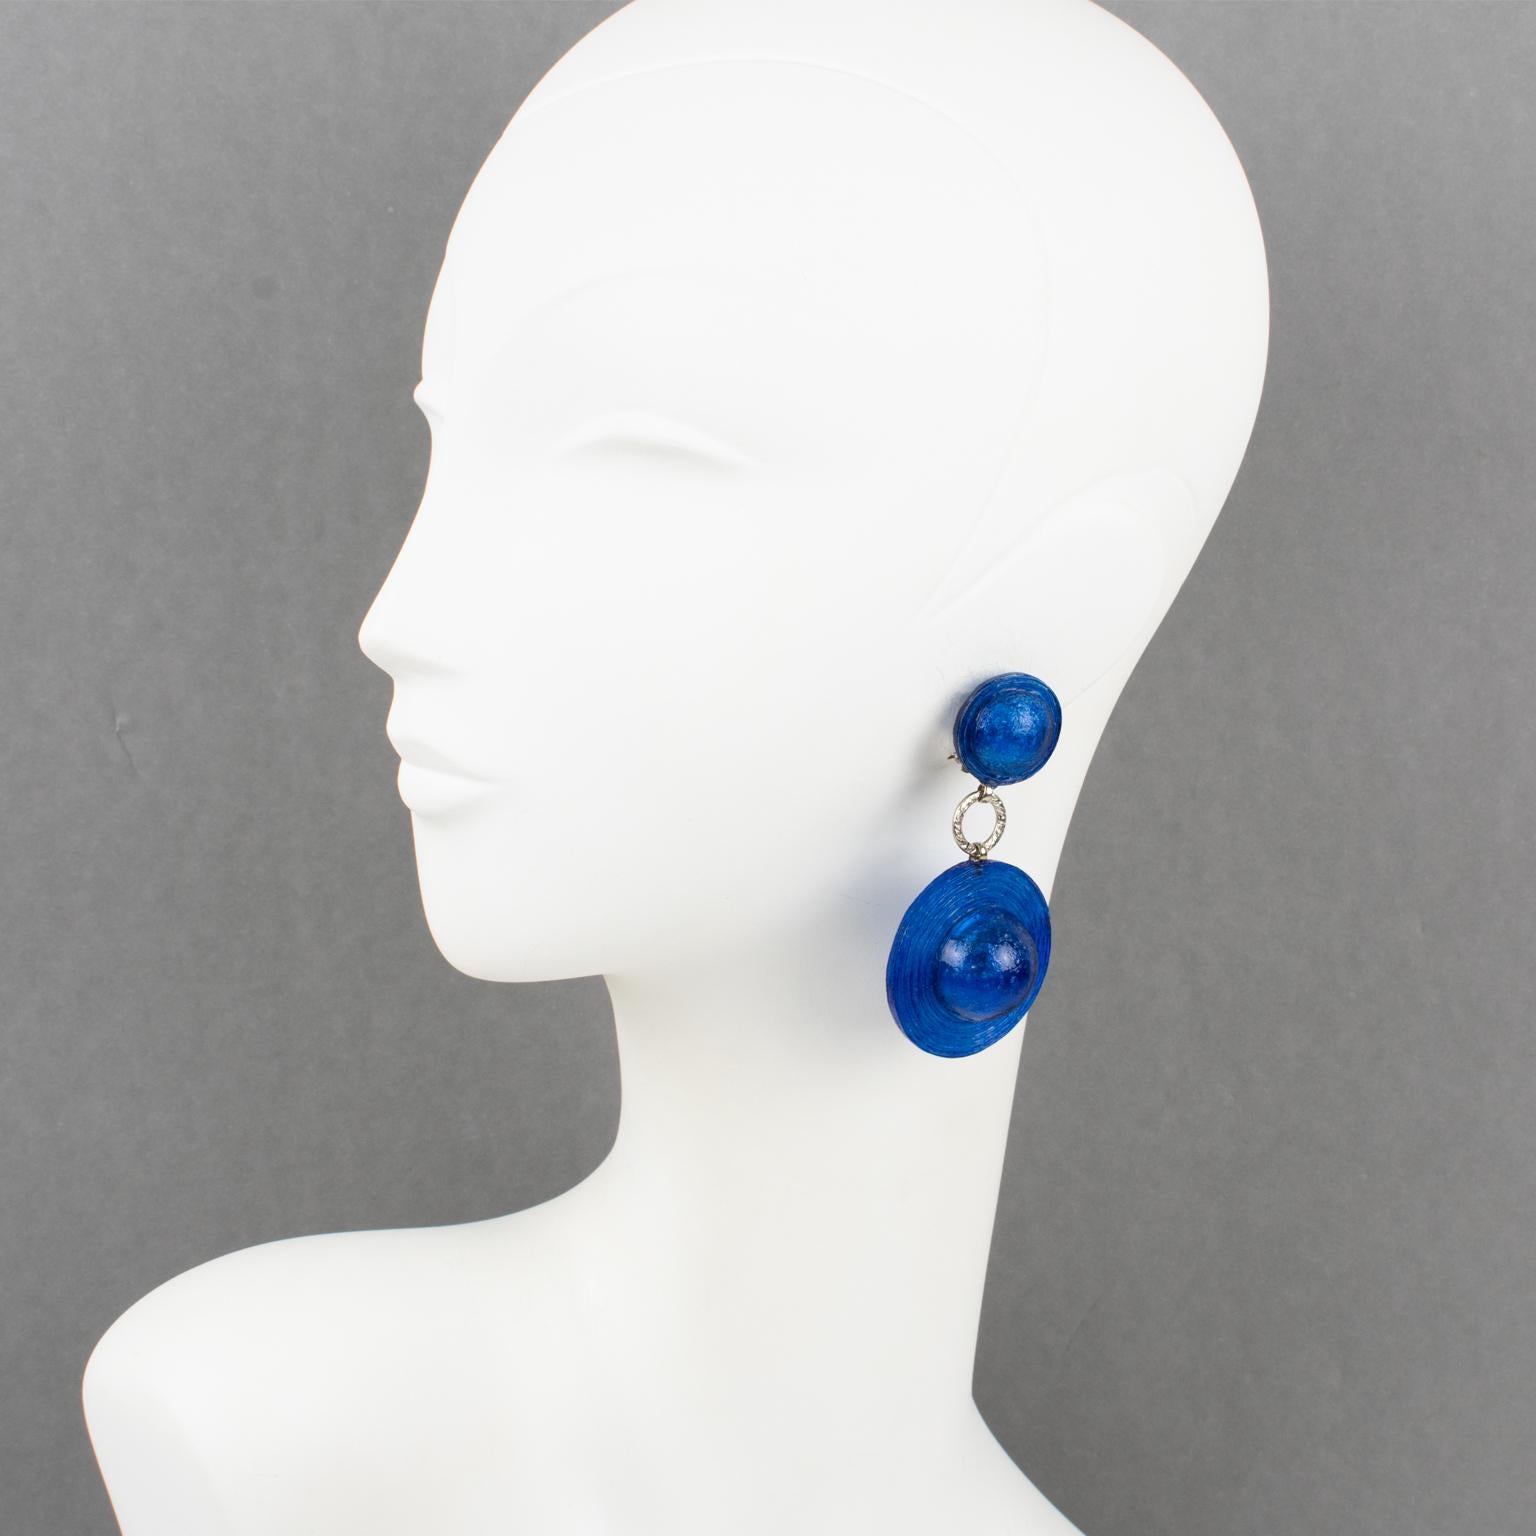 Diese hübschen Francoise Montague Paris-Ohrringe von Cilea Paris haben ein übergroßes, hutähnliches Design aus glänzendem, kobaltblauem Harz. Die Beschläge und Befestigungen sind aus versilbertem Metall. Es gibt keine sichtbare Signatur wie bei